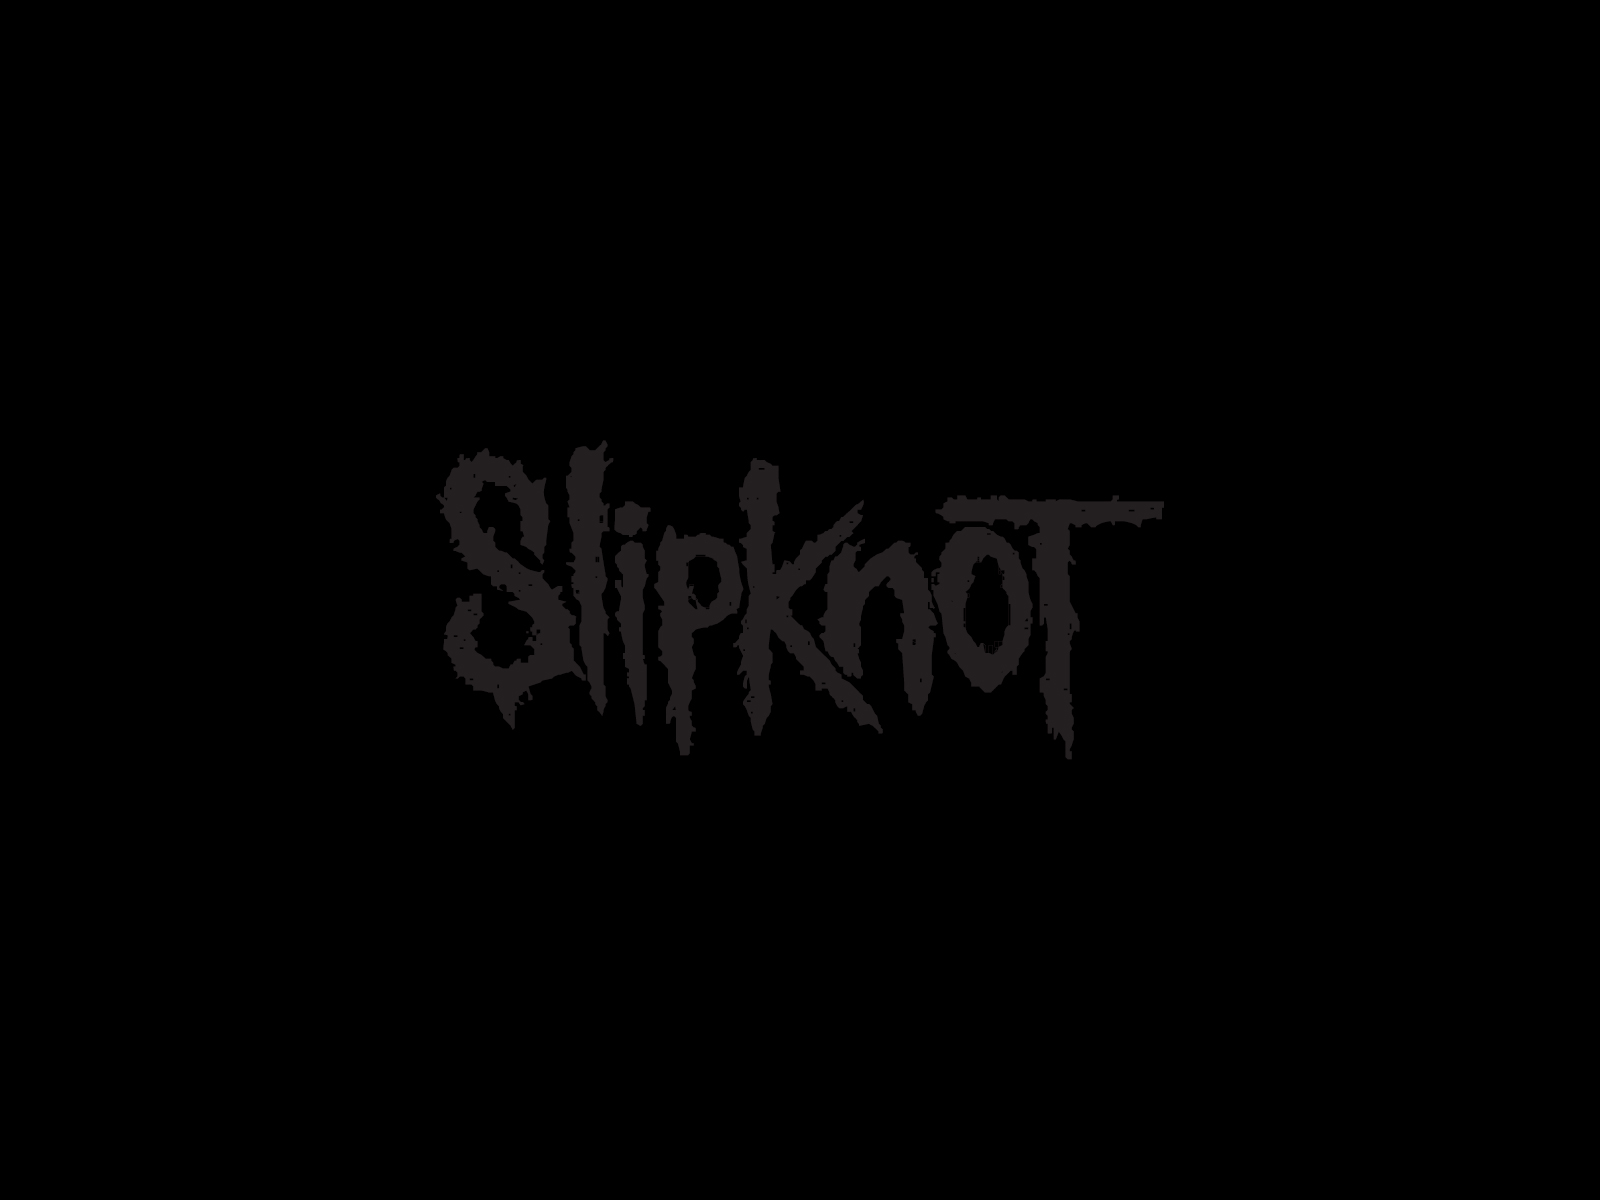 slipknot, nu metal, music, heavy metal, industrial metal Free Stock Photo